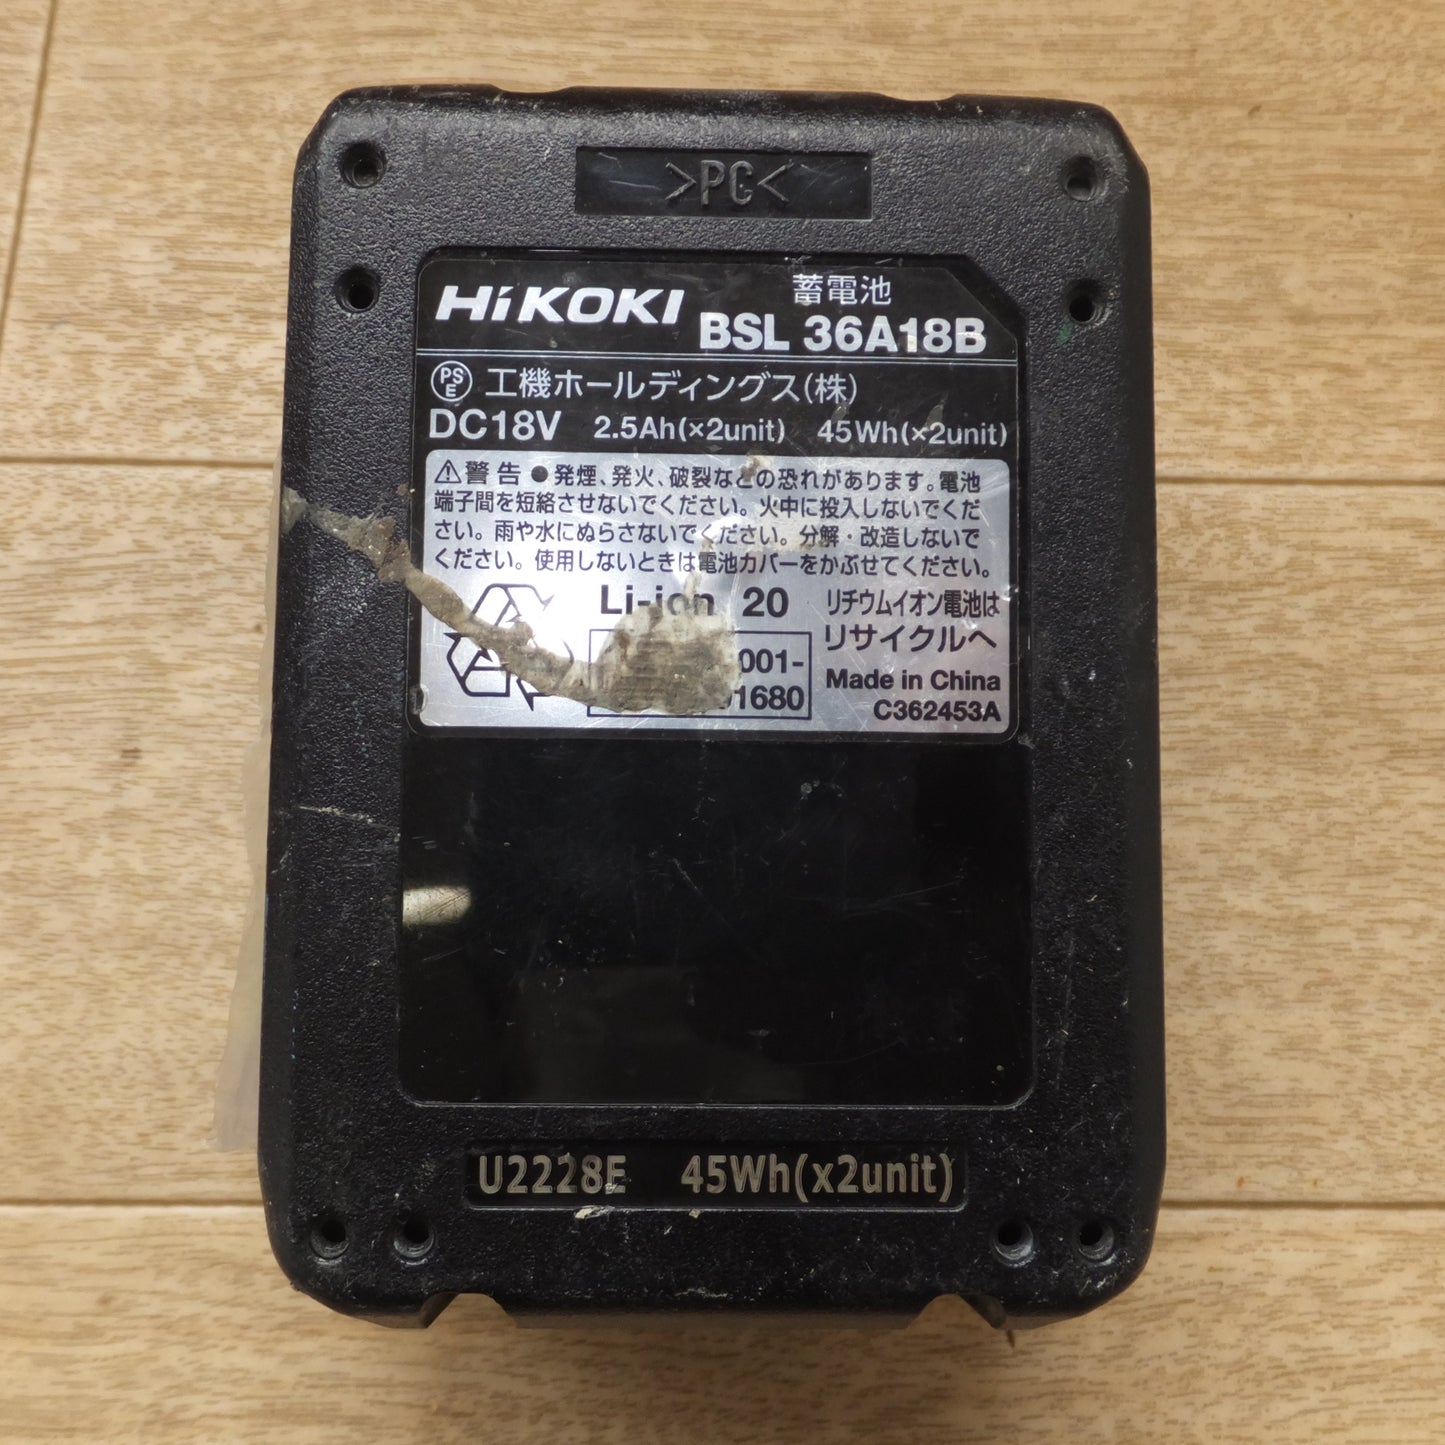 [送料無料] ★ハイコーキ HiKOKI 蓄電池 BSL36A18B　DC18V 2.5Ah(×2unit) 45Wh(×2unit) Li-ion 20★